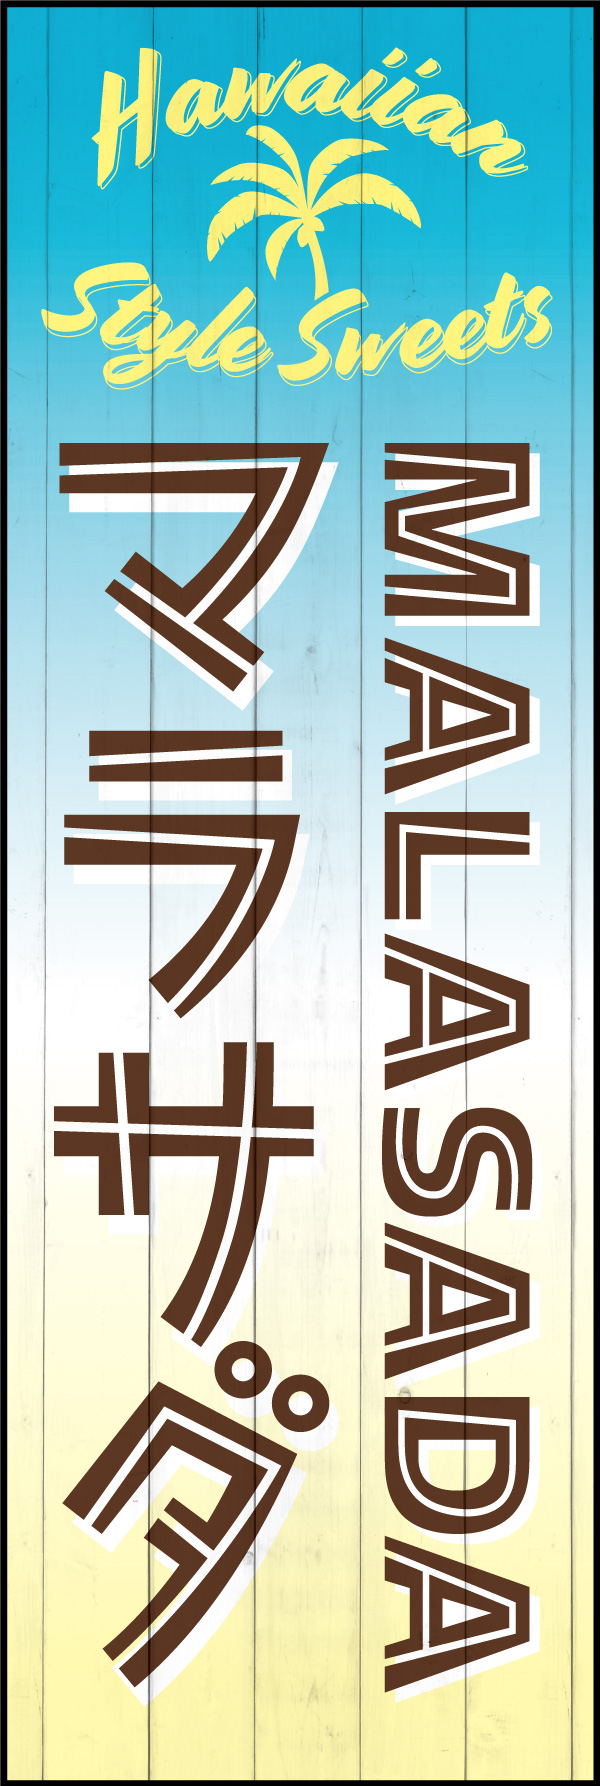 マラサダ 155_01 「マラサダ（MARASADA）」ののぼりです。日本ではハワイの印象が強いため、わかりやすく「HAWAIIAN STYLE SWEETS」と表記しました。（Y.M）